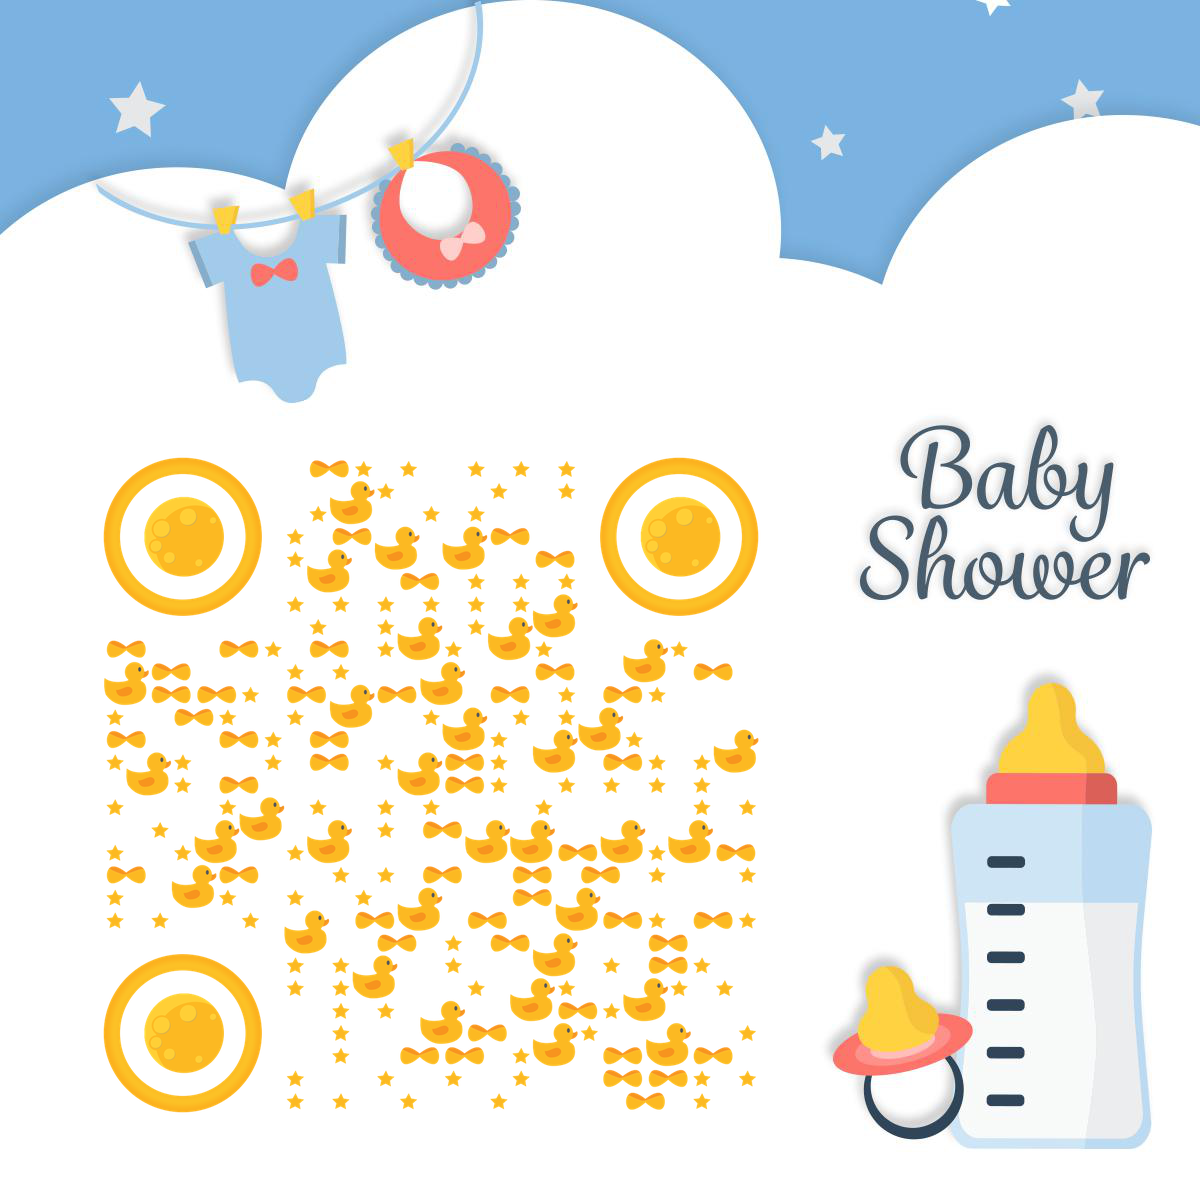 宝宝向未来粉蓝星球梦婴儿用品二维码-正方形码-平面静态